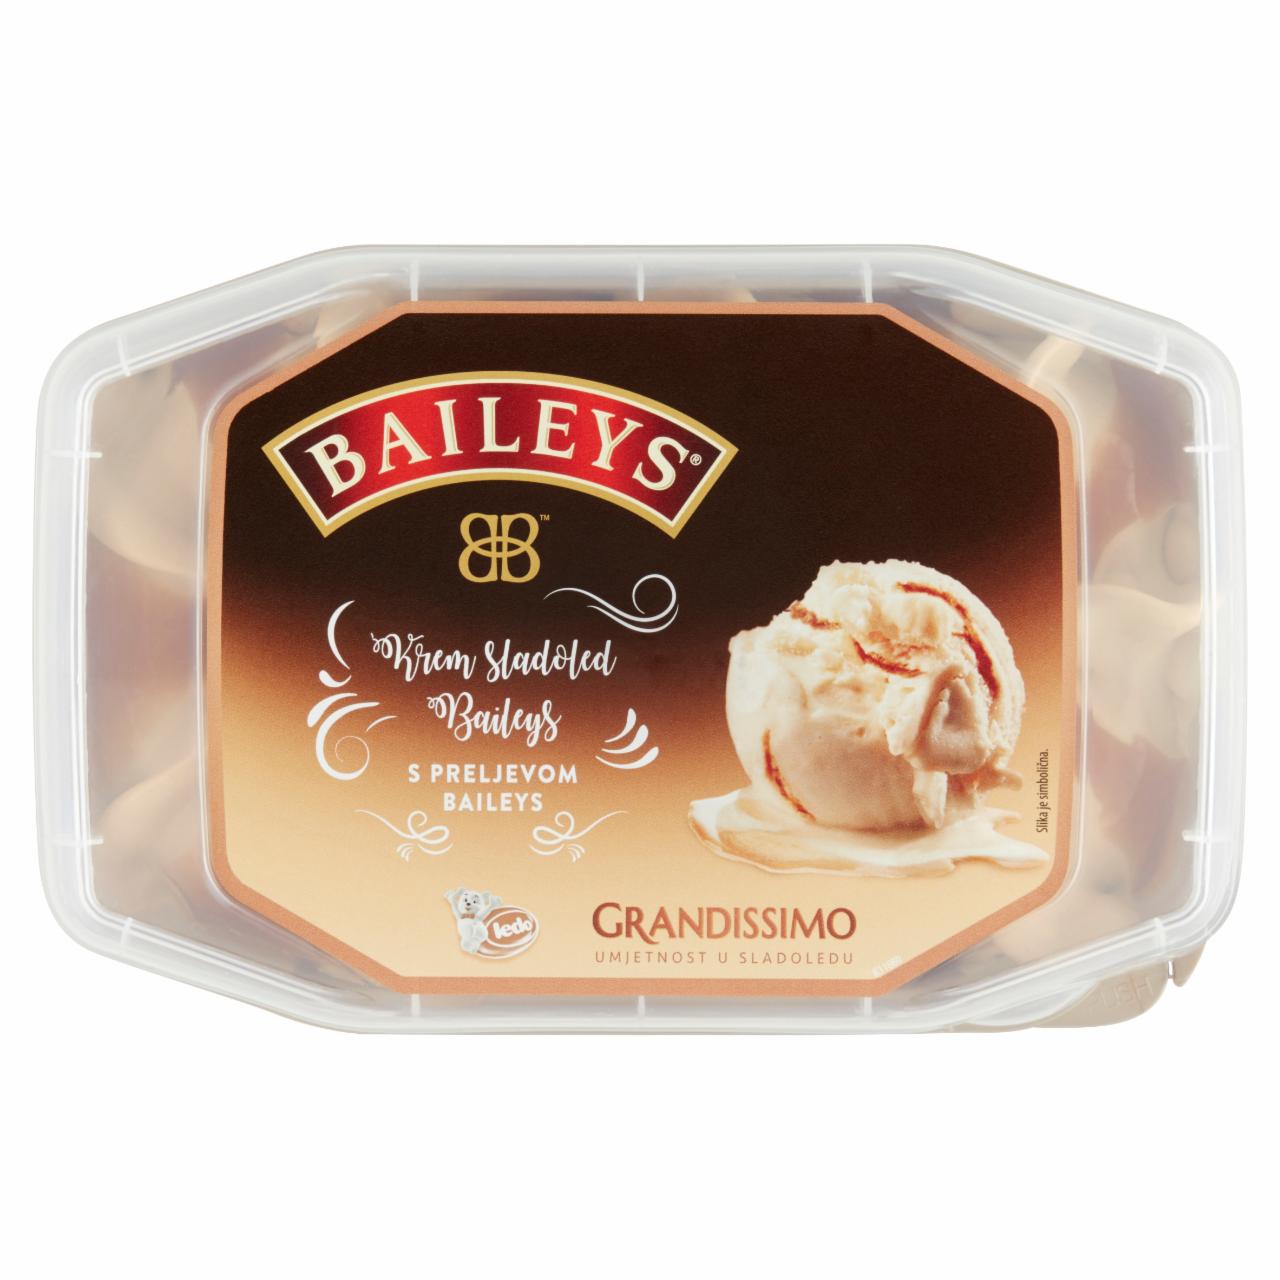 Képek - Ledo Grandissimo Bailey's ízű jégkrém 900 ml